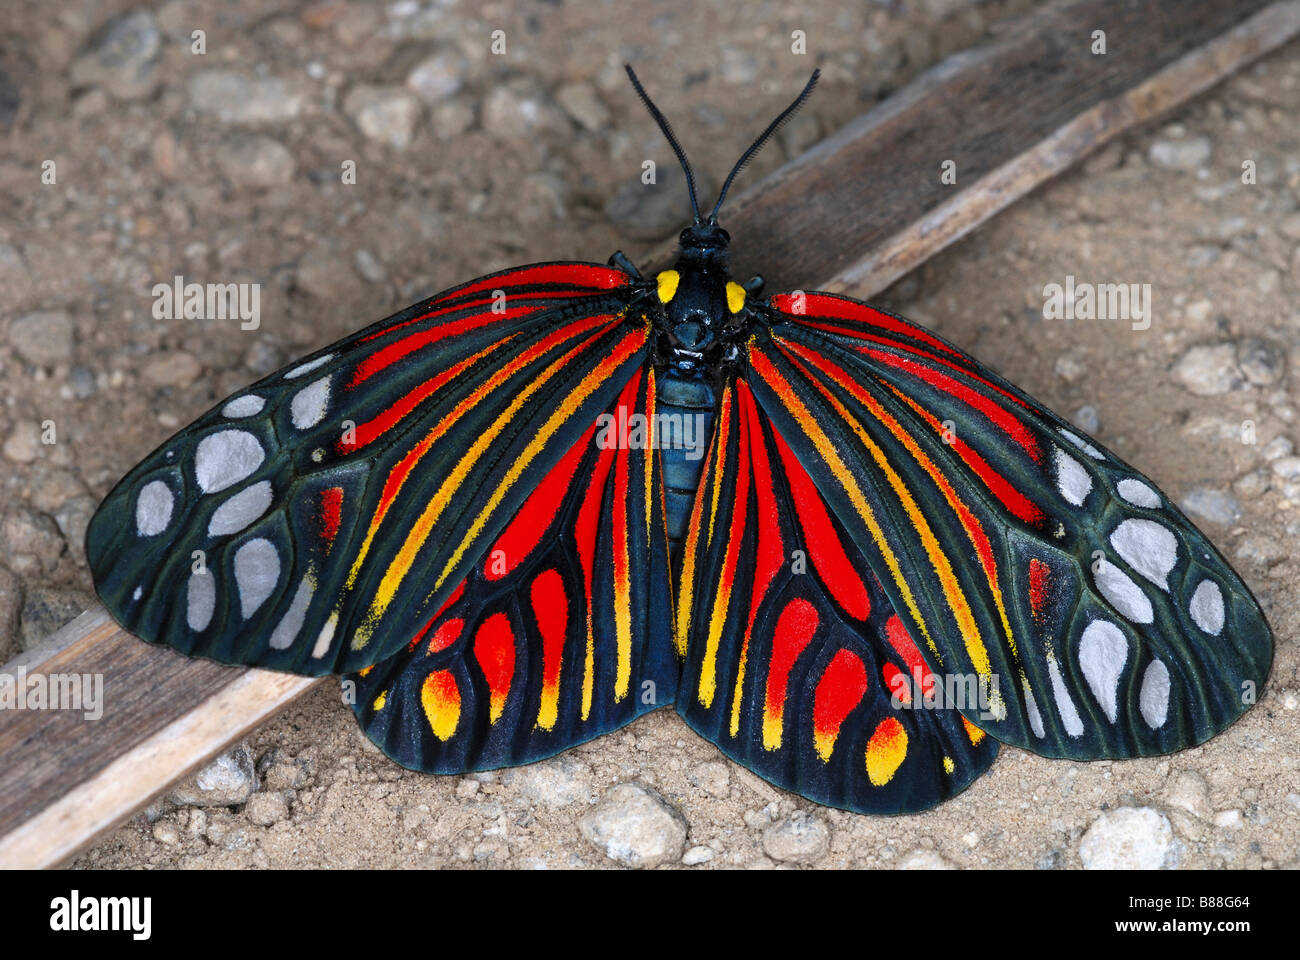 Arlecchino Moth. Una rara e colorata giorno flying Moth macchiato solo una manciata di volte. Arunachal Pradesh. India. Foto Stock